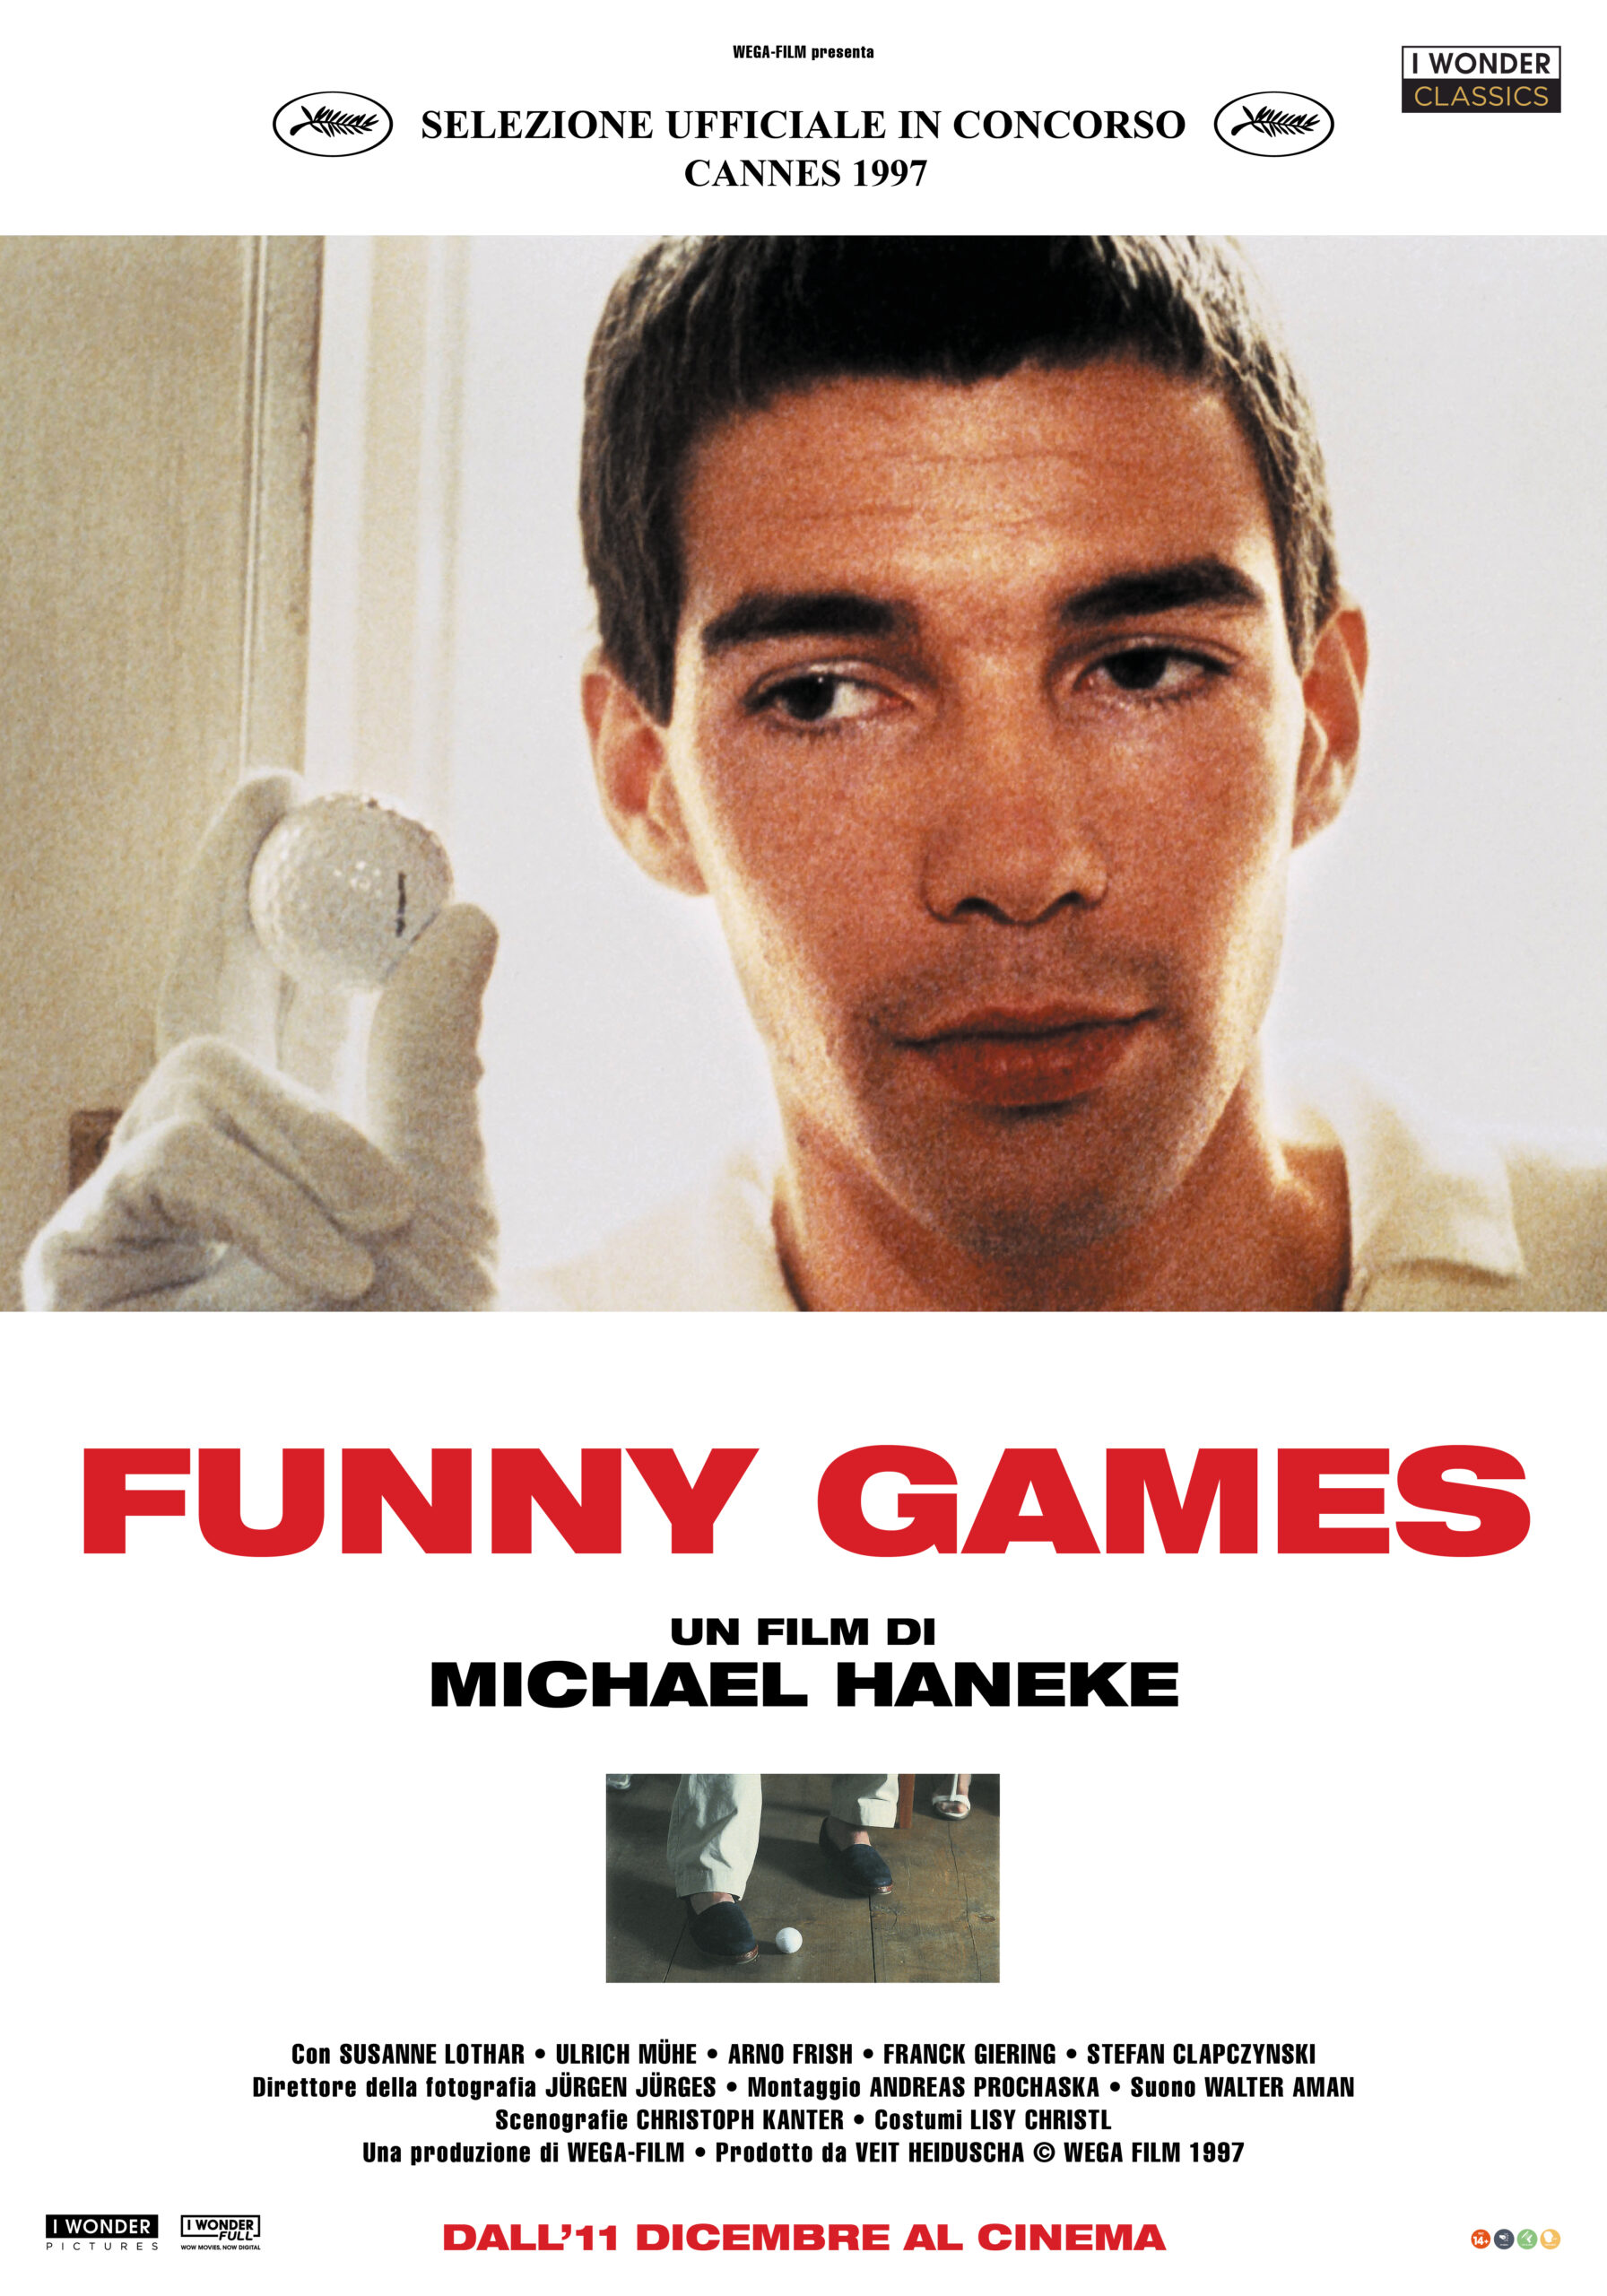 Funny Games: da oggi torna nelle sale il cult di Michael Haneke